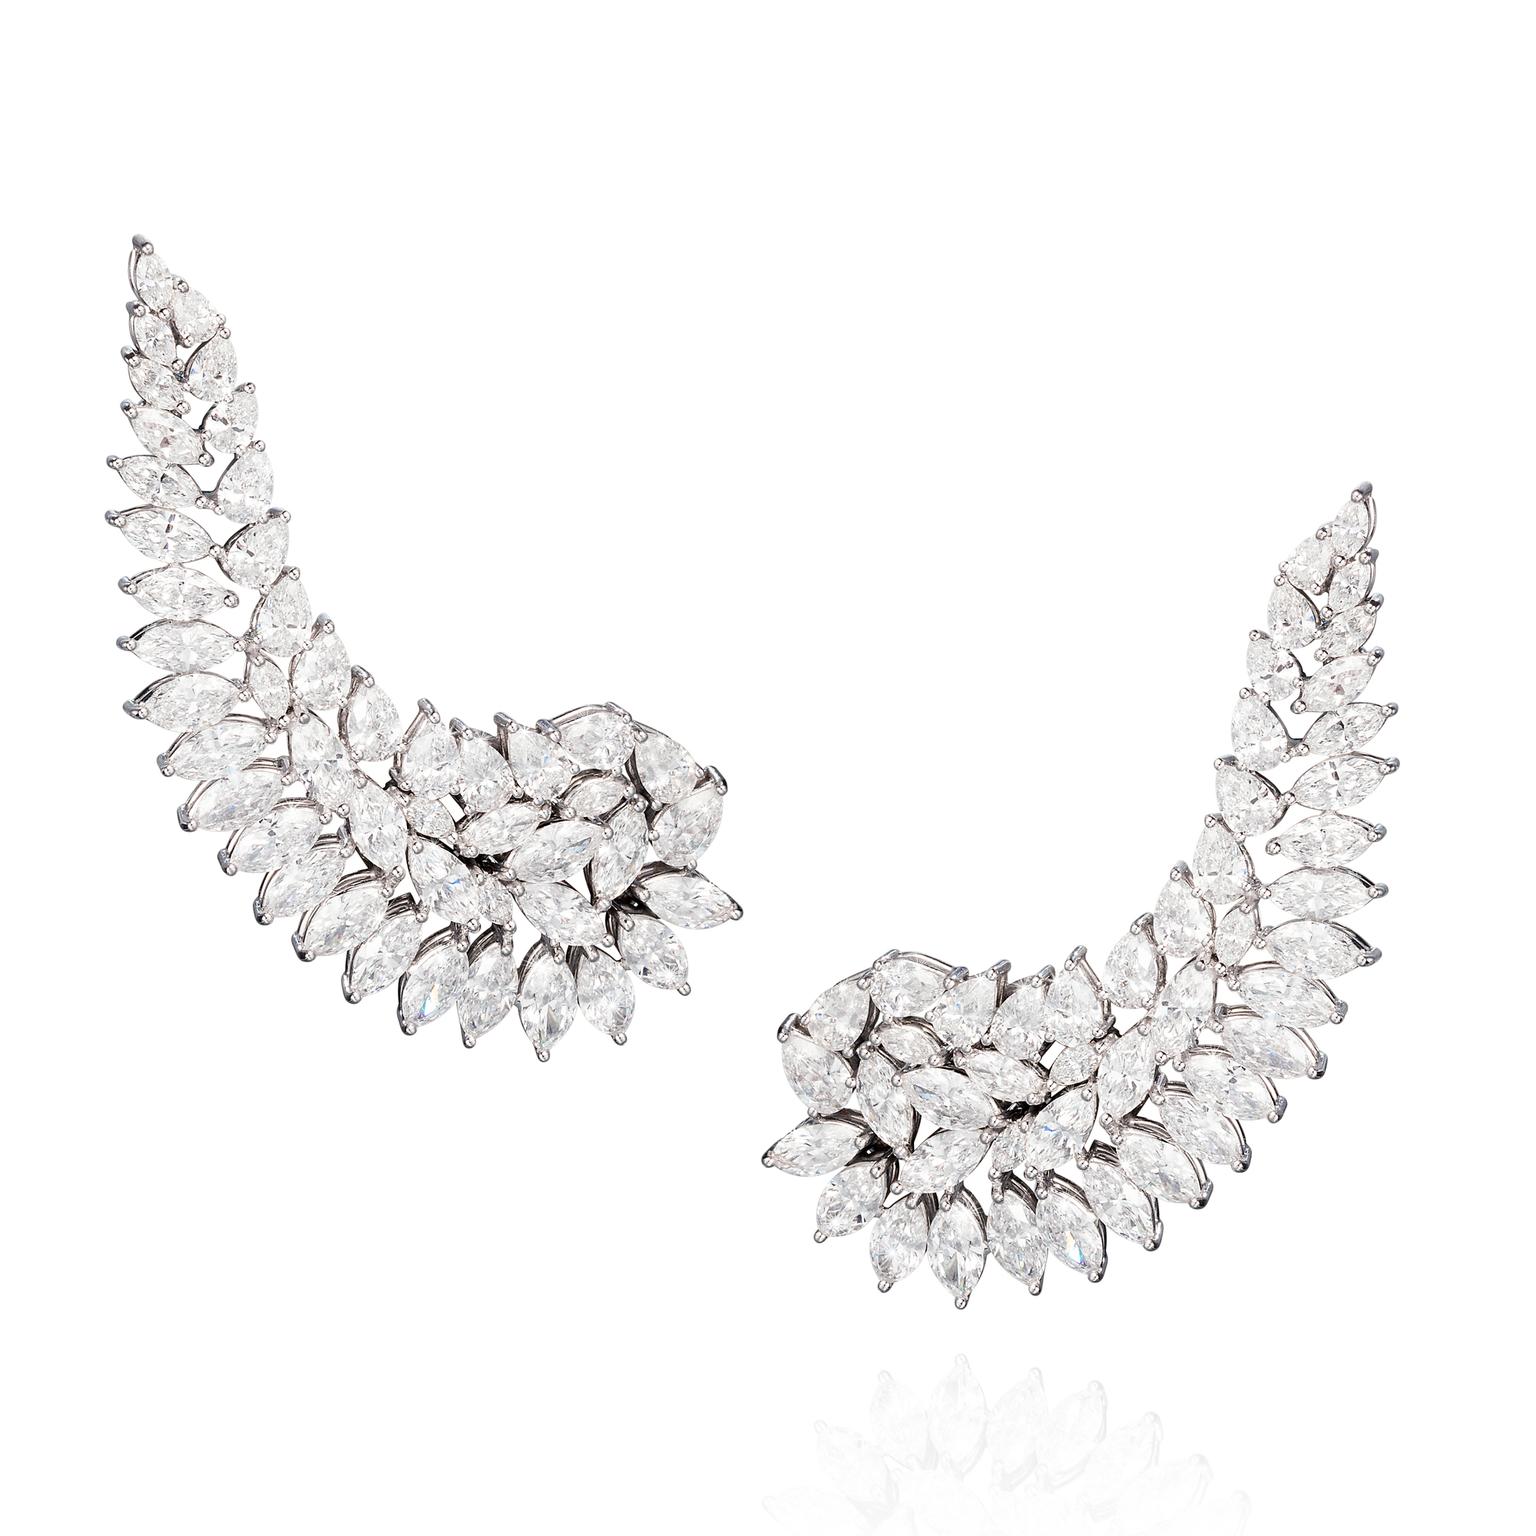 Vanleles diamond earrings